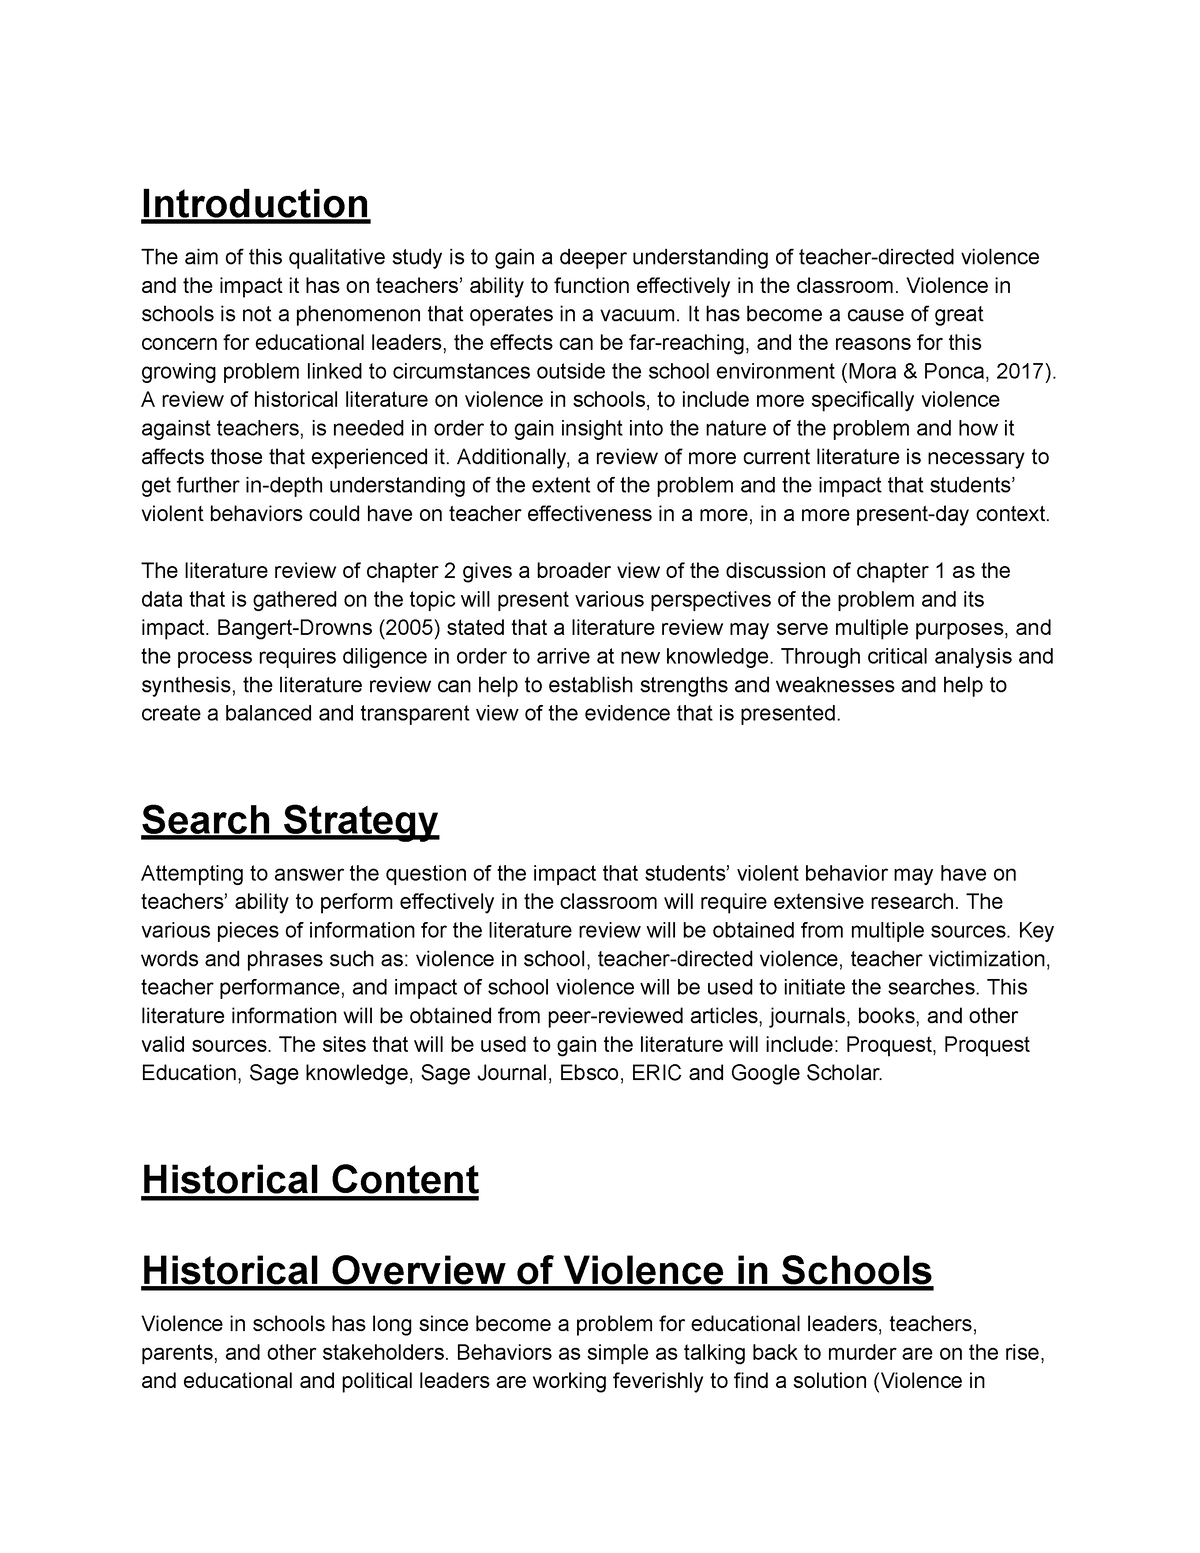 violence in schools essay